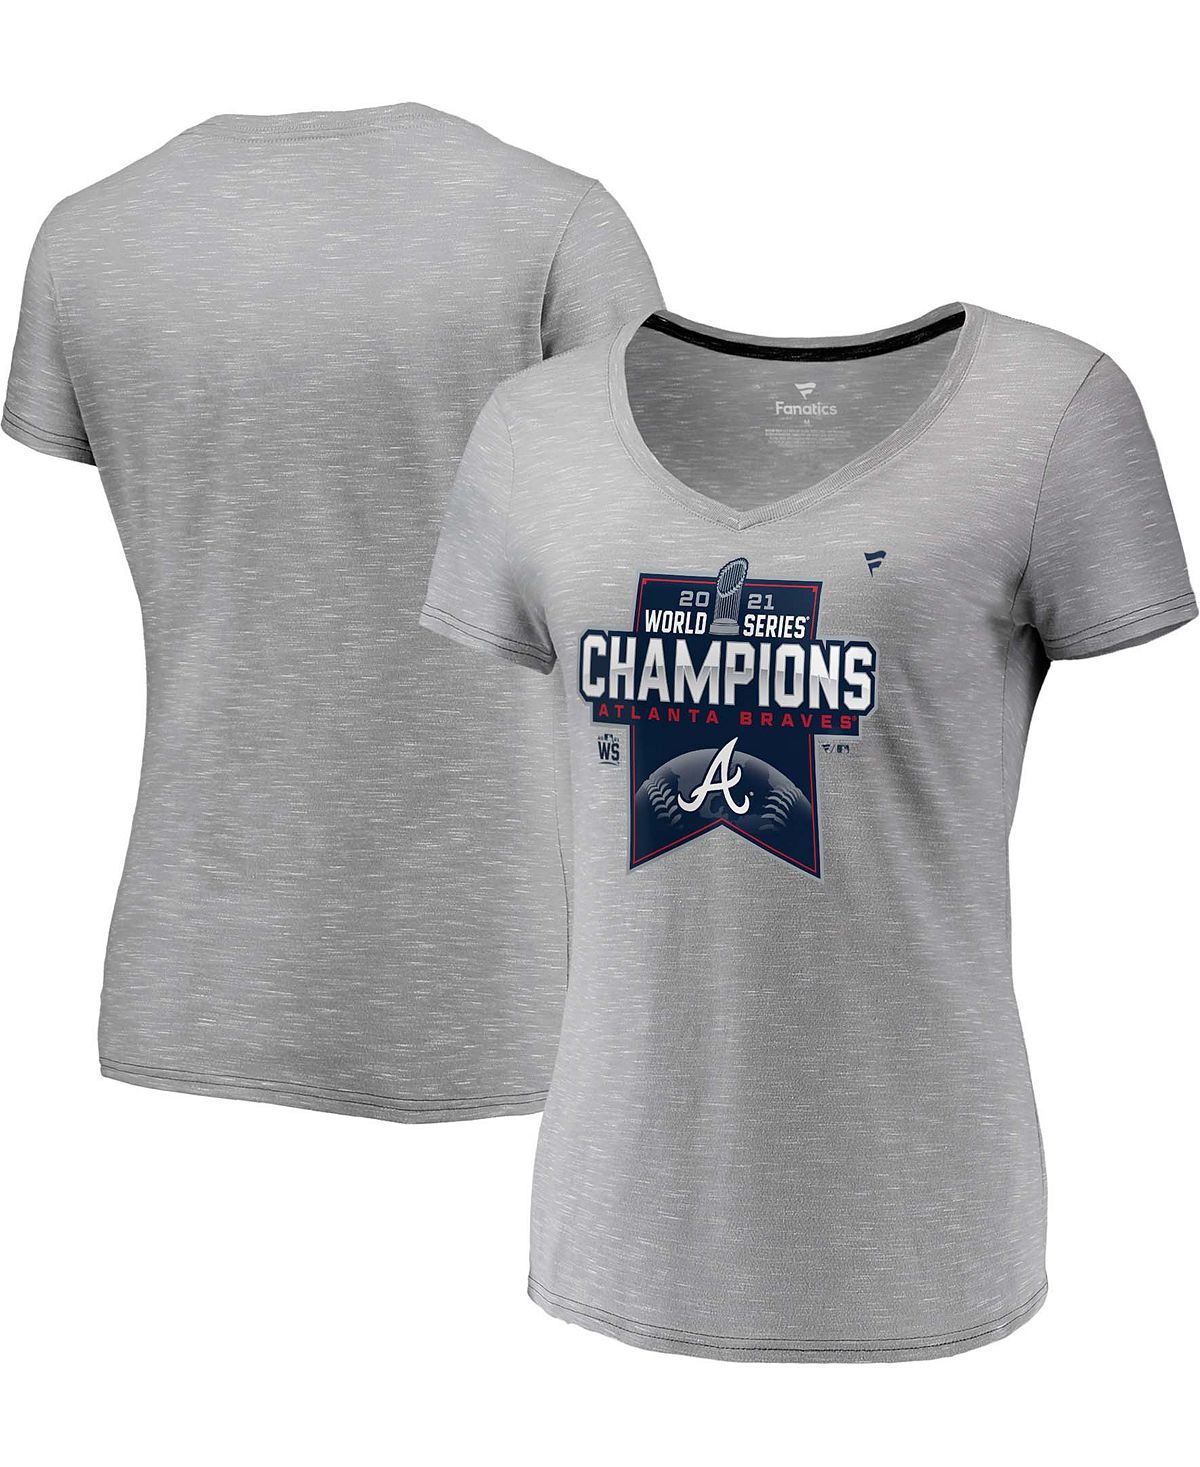 Женская футболка с v-образным вырезом в раздевалке Atlanta Braves World Series Champions 2021 Fanatics